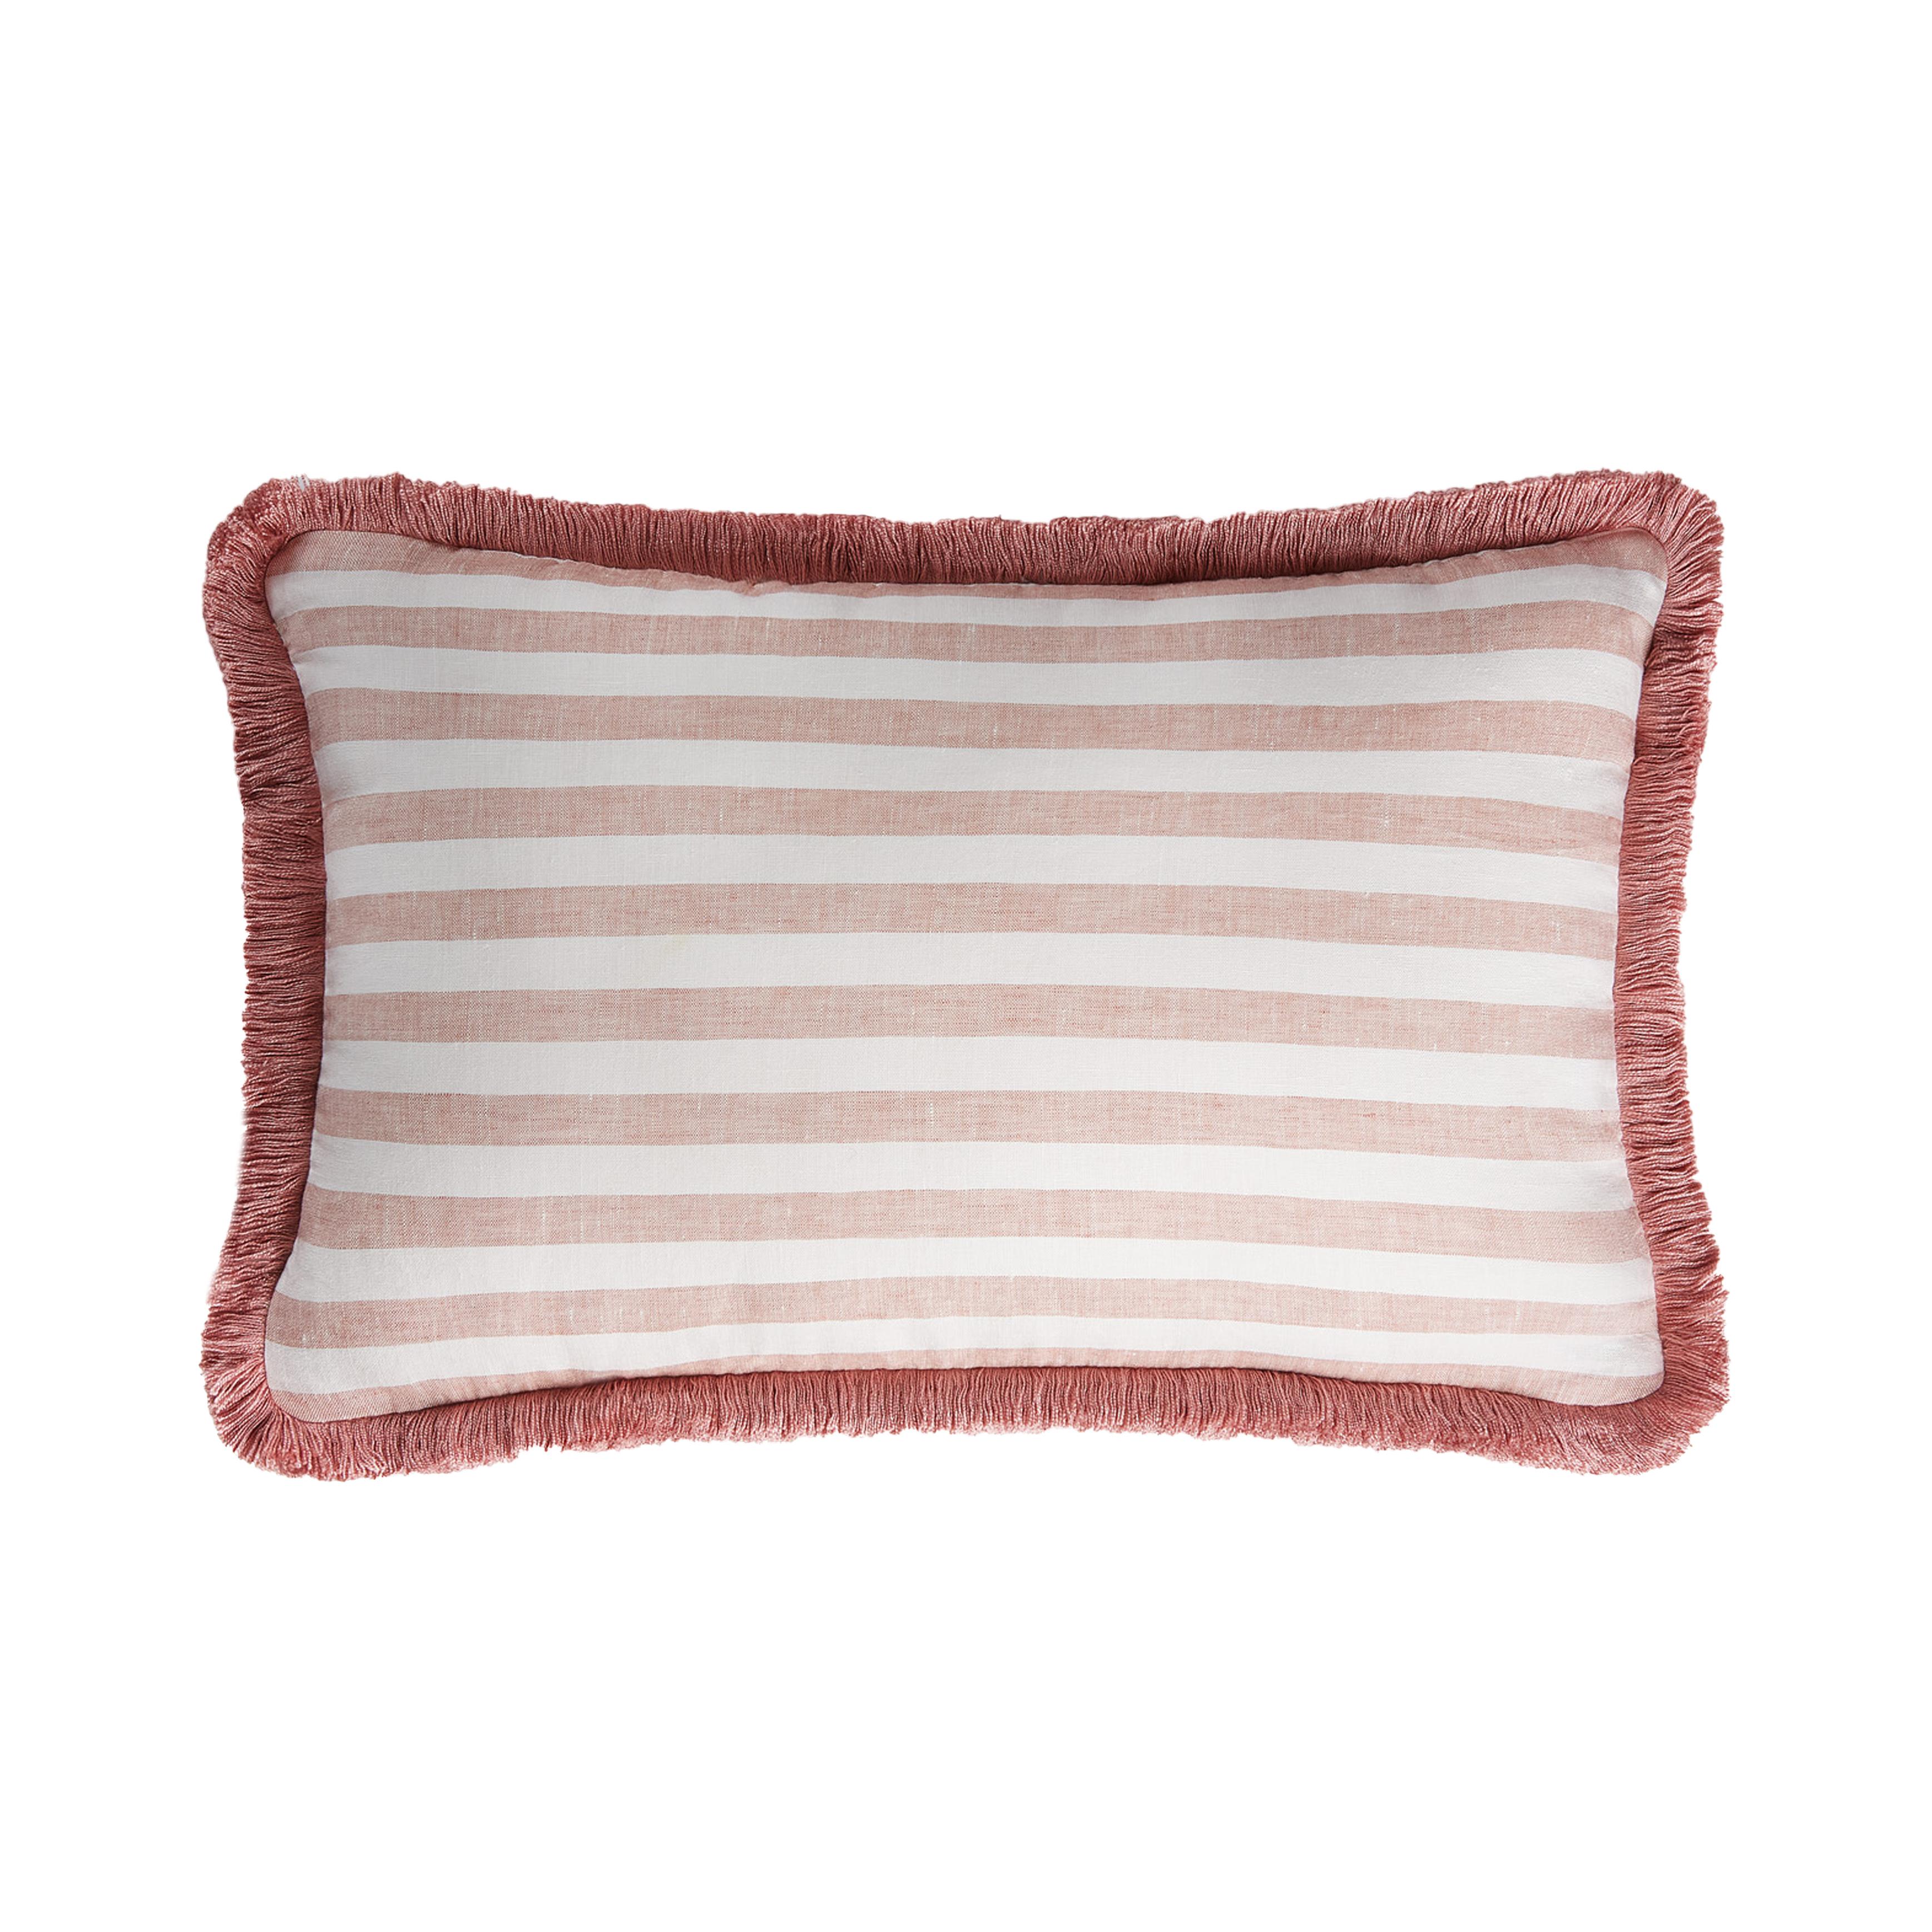 LO DECOR Happy Linen Pillow ist das perfekte Akzentstück für ein einfaches Stil-Update. Dieses Kissen ist ein schicker Akzent für jedes gut dekorierte Zuhause und verleiht einem Bett, Sofa oder Ihrem Lieblingssessel Charme. 
Aus reinem